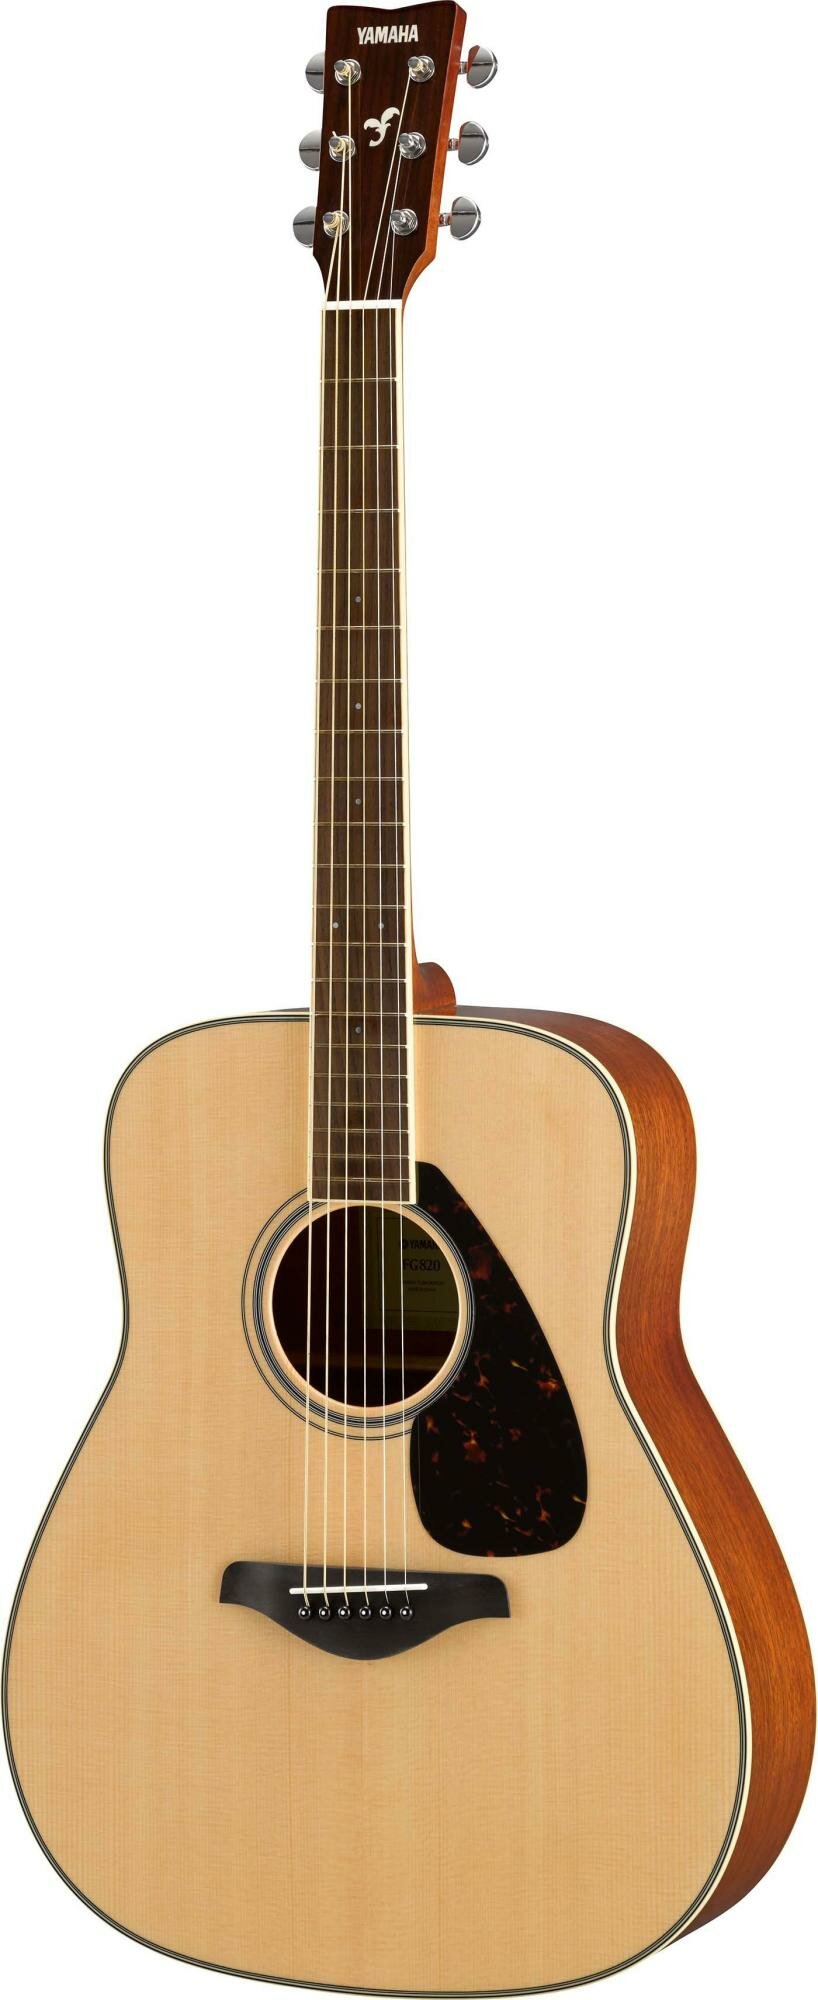 YAMAHA FG820 N - акустическая гитара, дредноут, верхняя дека массив ели, цвет натуральный